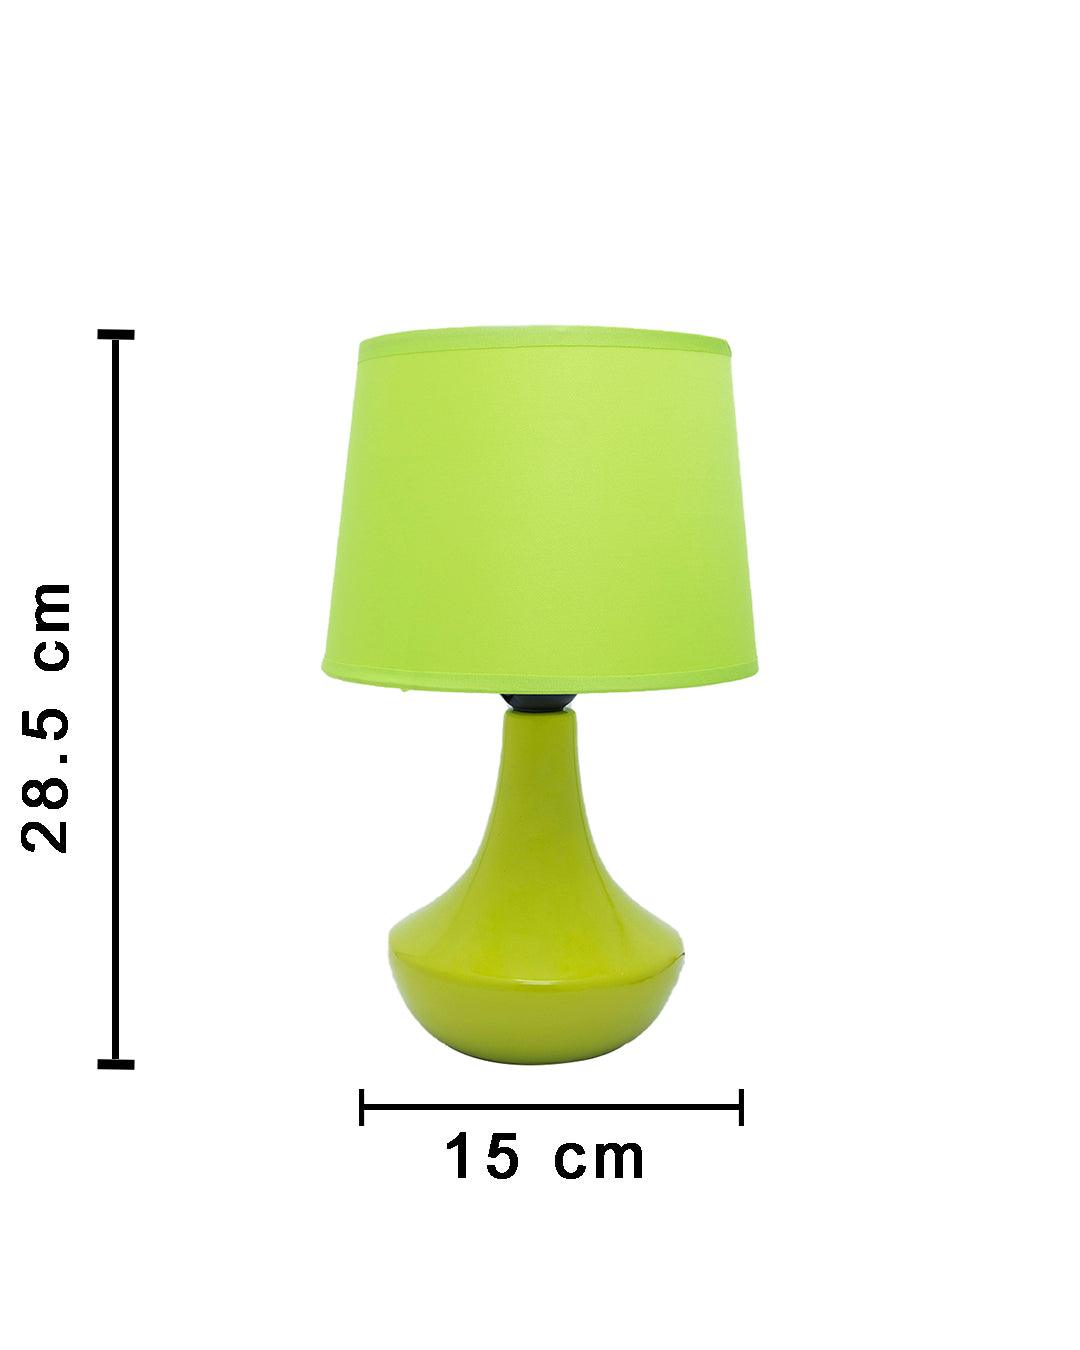 Market99 Ceramic Mini Table Lamp with Shade - MARKET 99